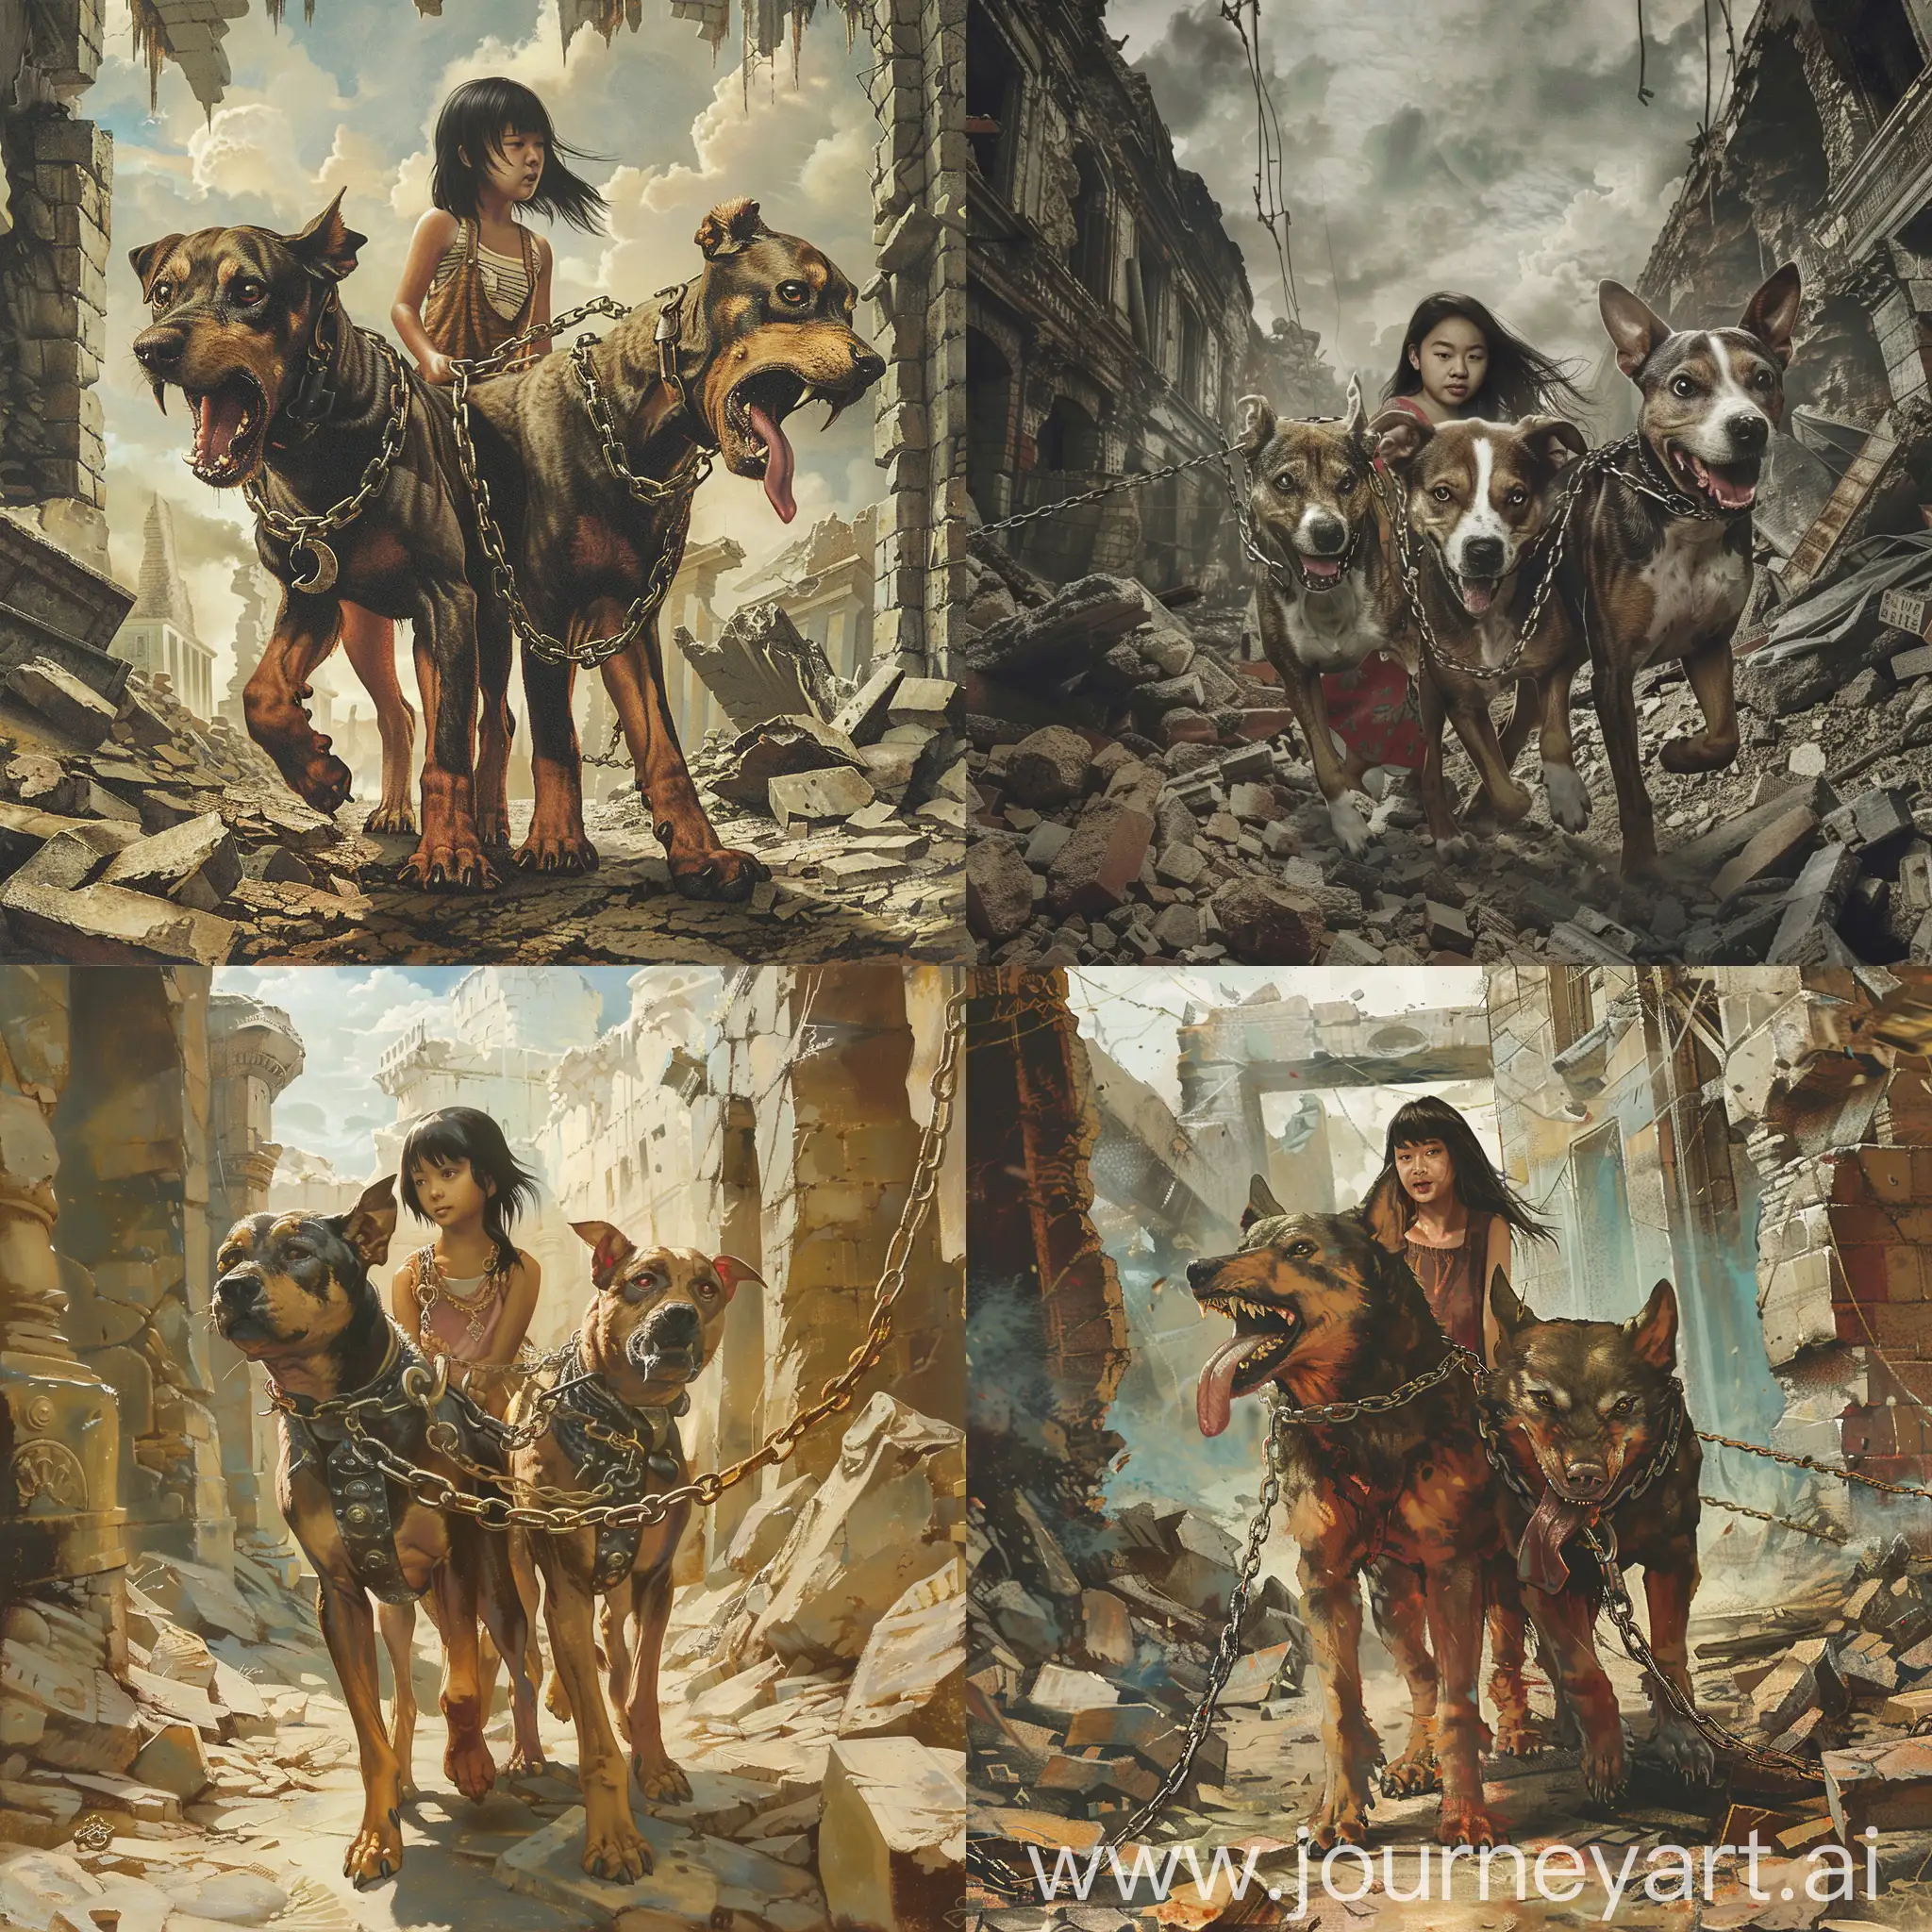 Цербер трехглавый пёс на цепи с девушкой азиаткой идут по разрушенным руинам